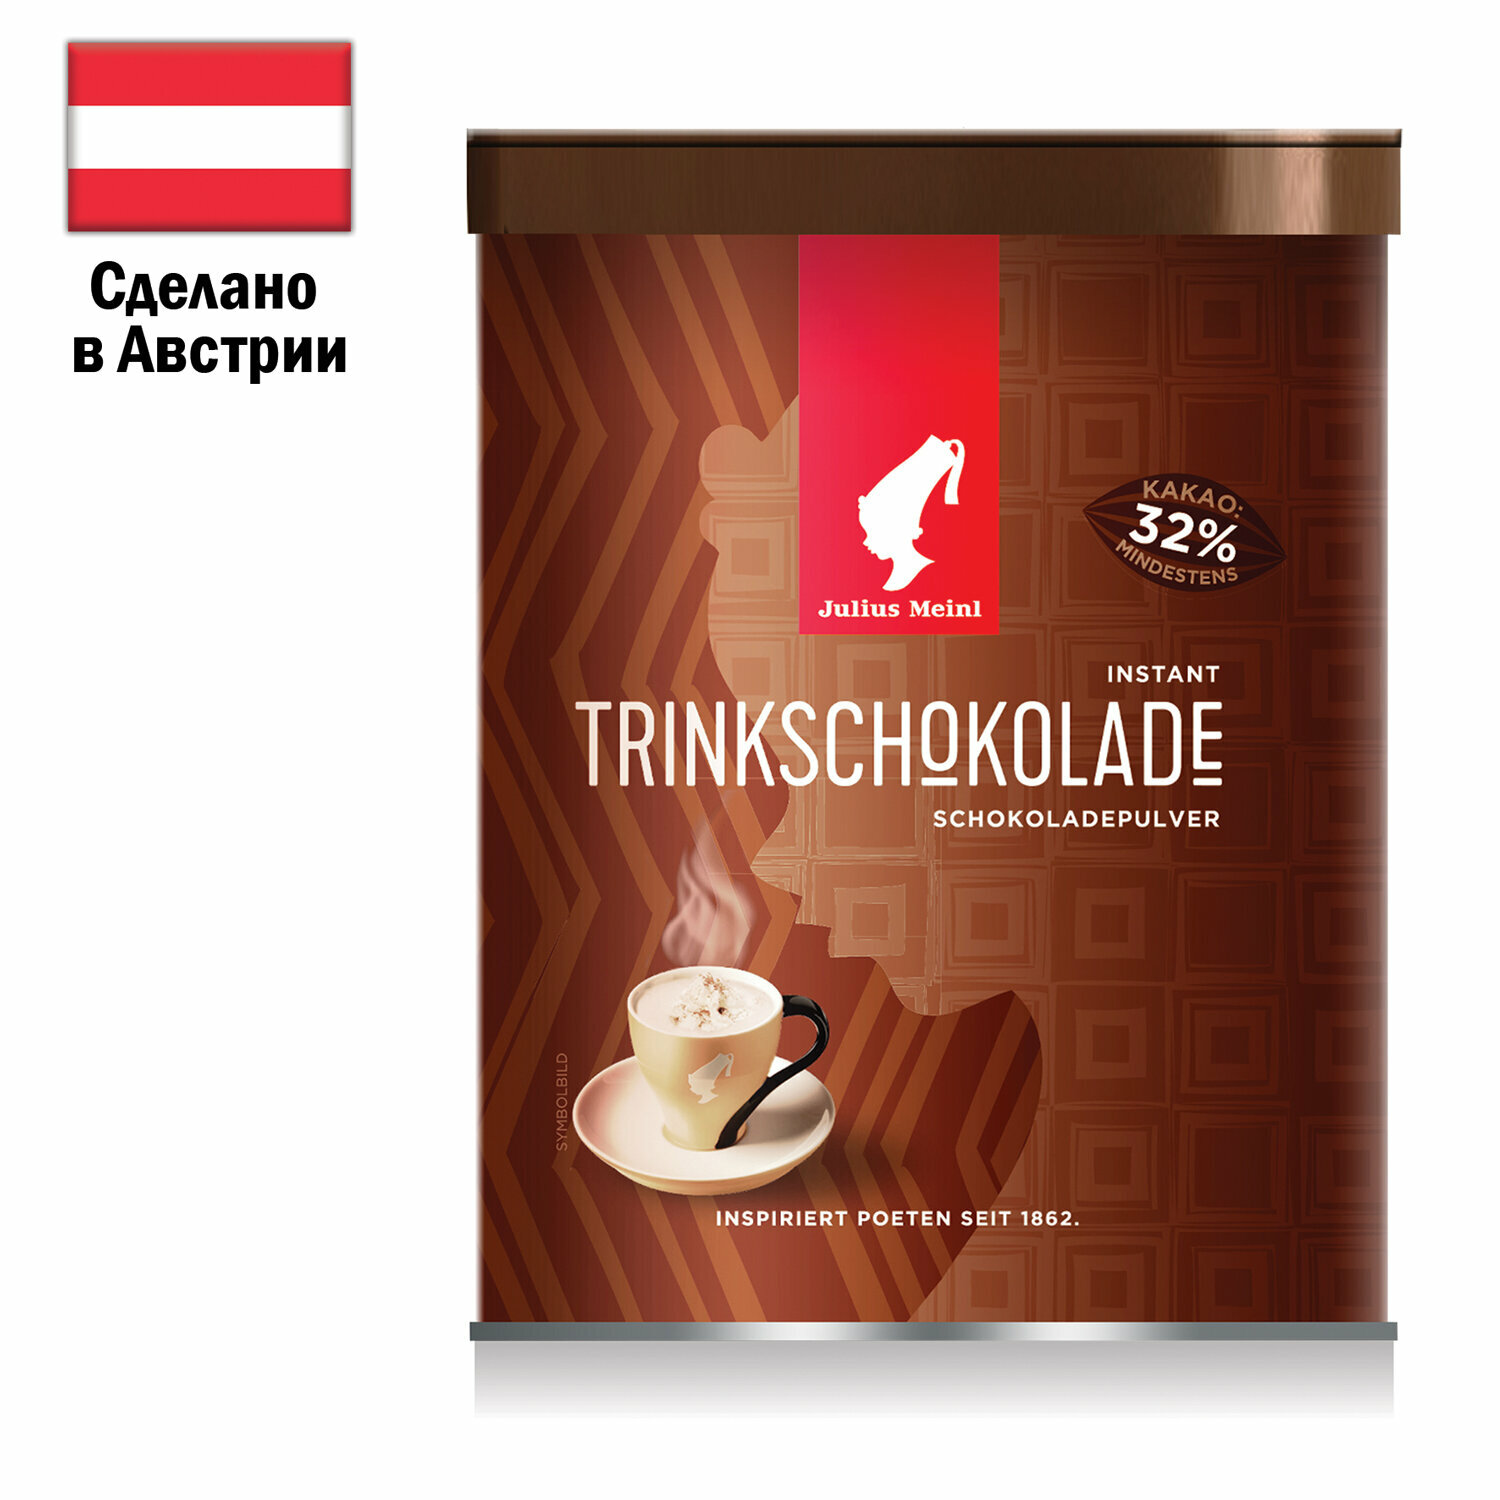 1 Горячий шоколад JULIUS MEINL «Trinkschokolade», банка 300 г, австрия - фотография № 1